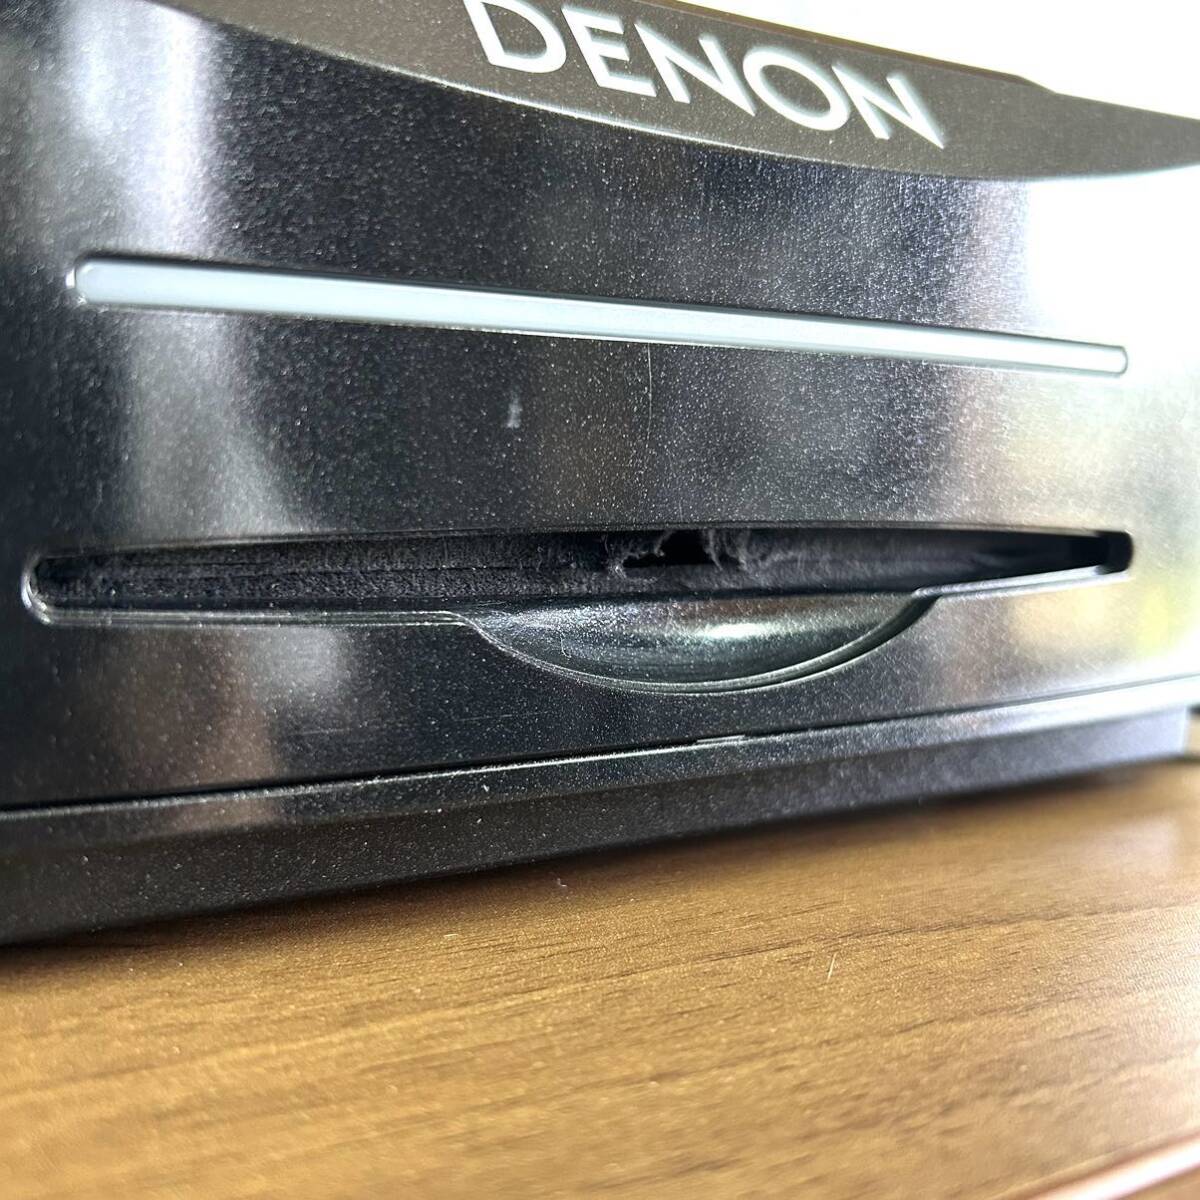 [ бесплатная доставка ] DENON Denon ten on DJ CD плеер DN-S3700 CDJ 2009 год производства пыль с чехлом 2 шт. комплект [ текущее состояние товар ]